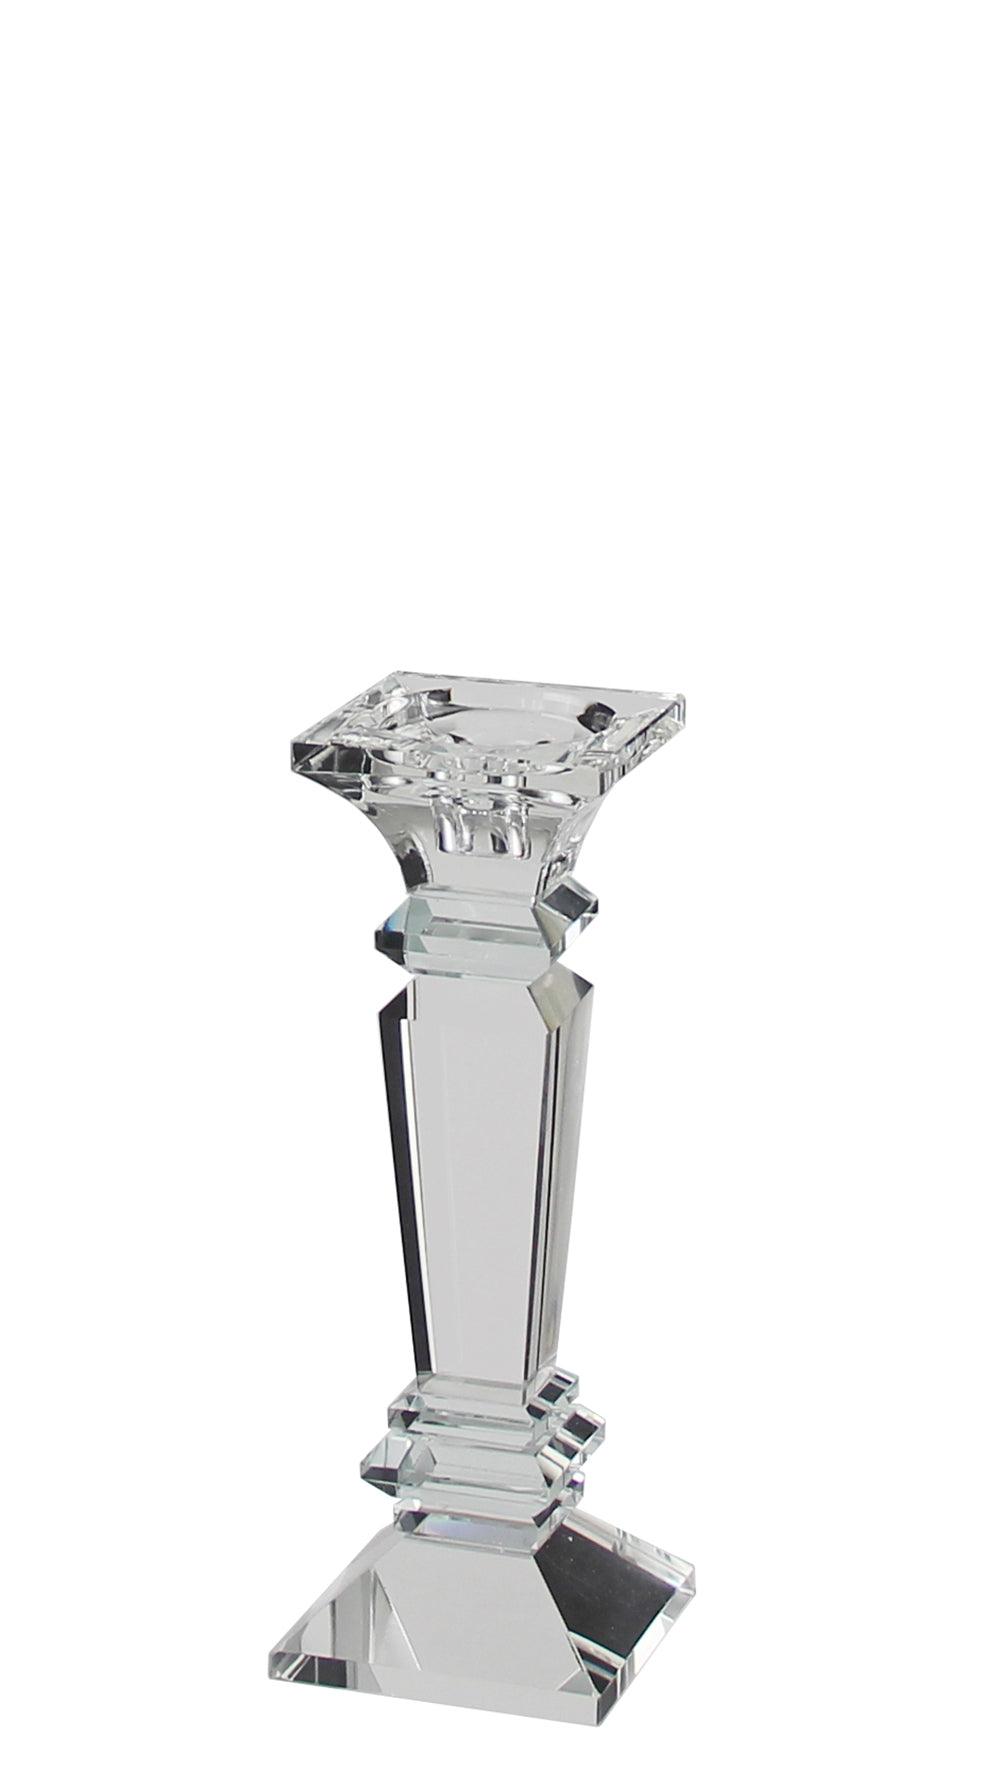 Kaheku Colton Kristallglas Teelichthalter hochklar Handarbeit - HomeDesign Knaus wir schaffen Inspirationen 